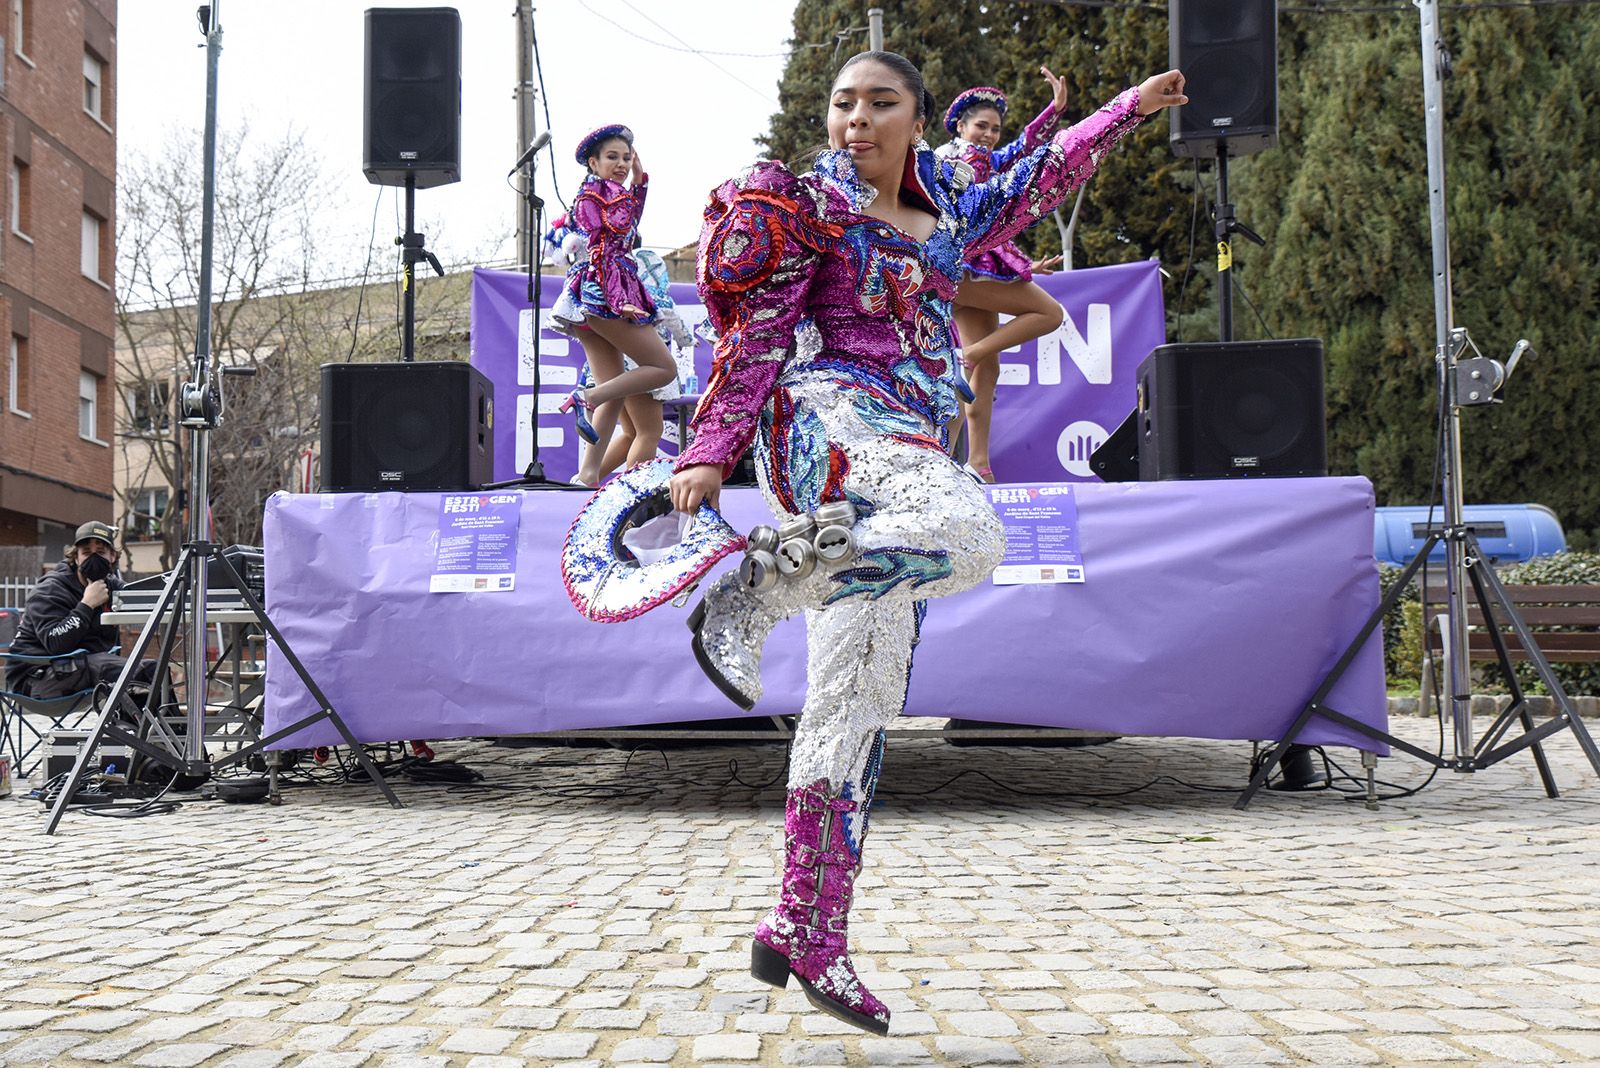 Actuació de dansa a càrrec de l'associació folklòrica i cultural de Bolívia Caporales "La Fraternidad". ESTROGENFEST. Foto: Bernat Millet.